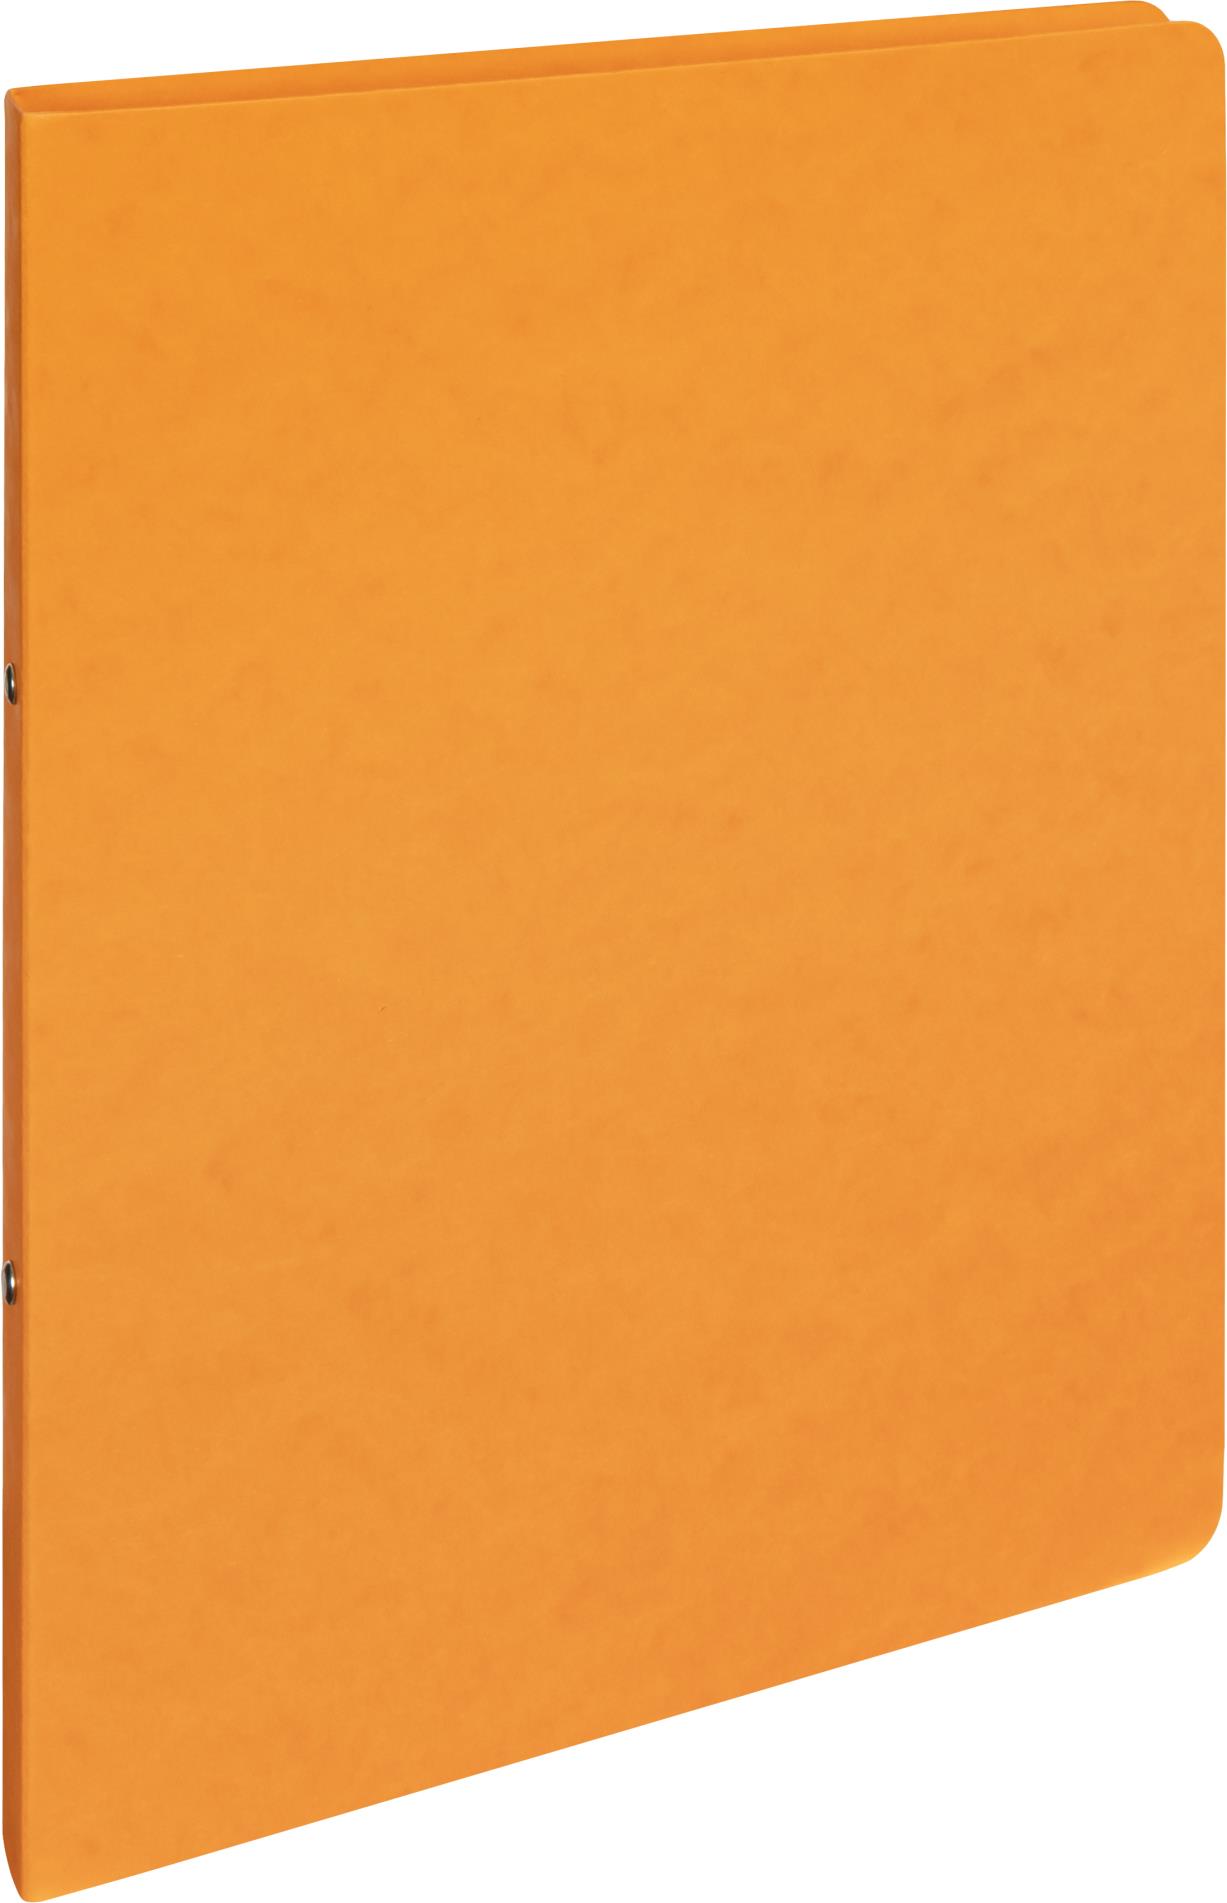 Karton P+P Pořadač dvoukroužkový prešpánový A4 2 cm, oranžový